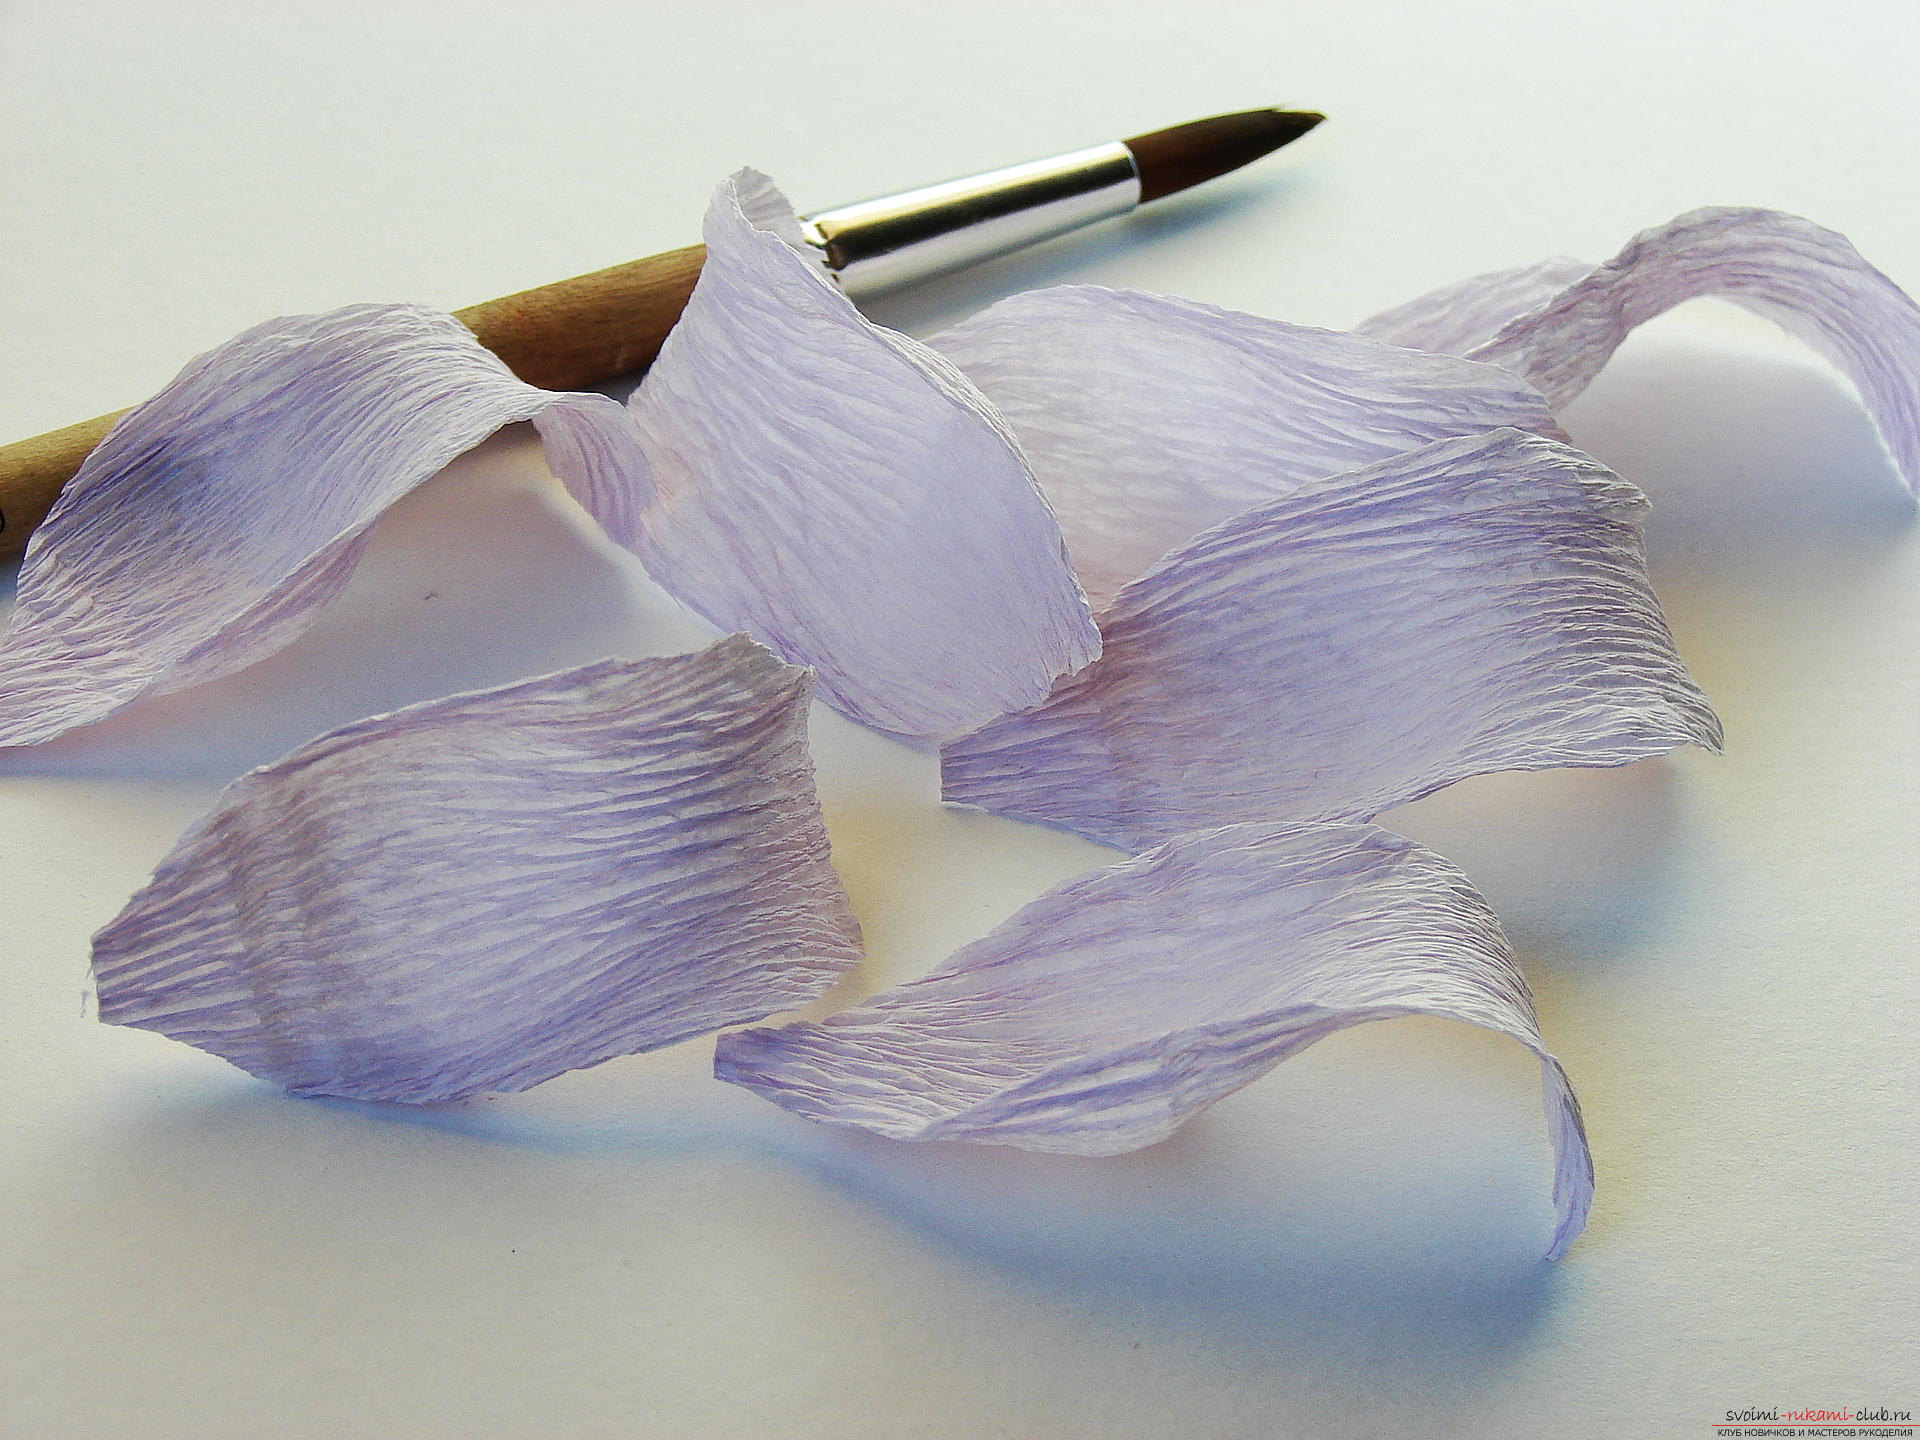 Мастер-класс научит как сделать гофрированные цветы своими руками – лилии из гофрированной бумаги.. Фото №10